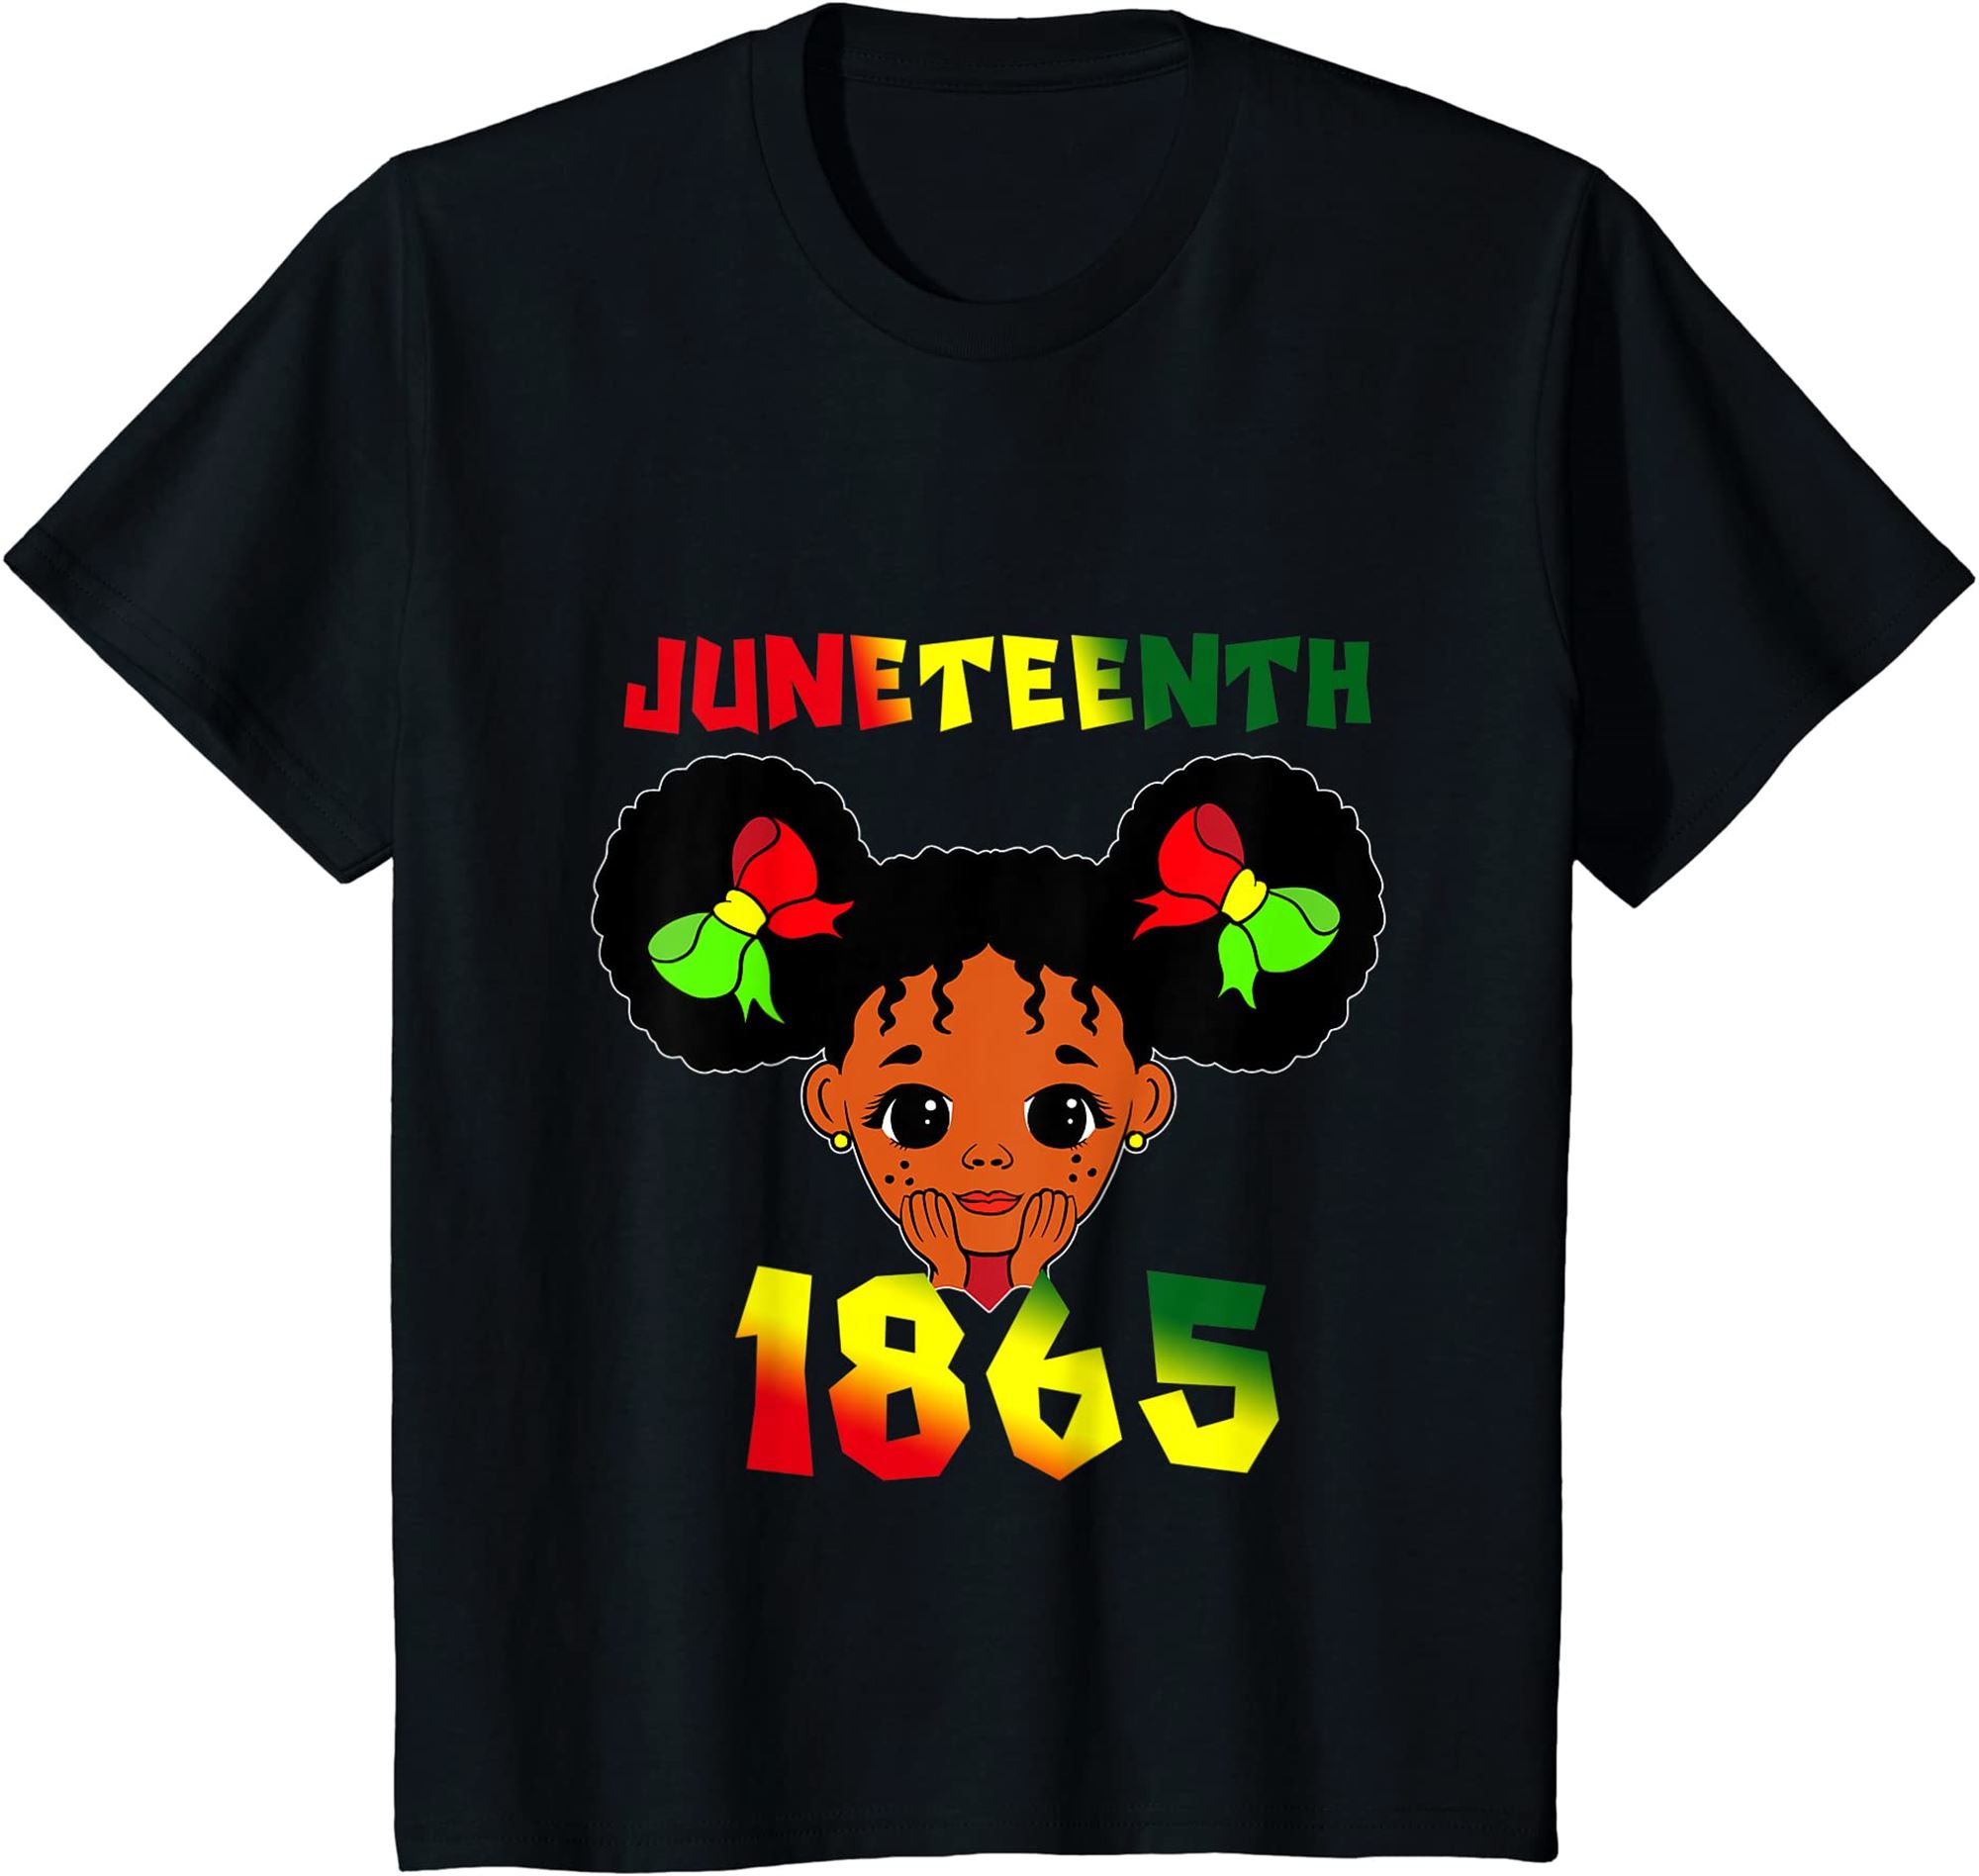 Kids Juneteenth Tshirt Women Juneteenth Shirts For Women Kids T-shirt Plus Size Up To 5xl